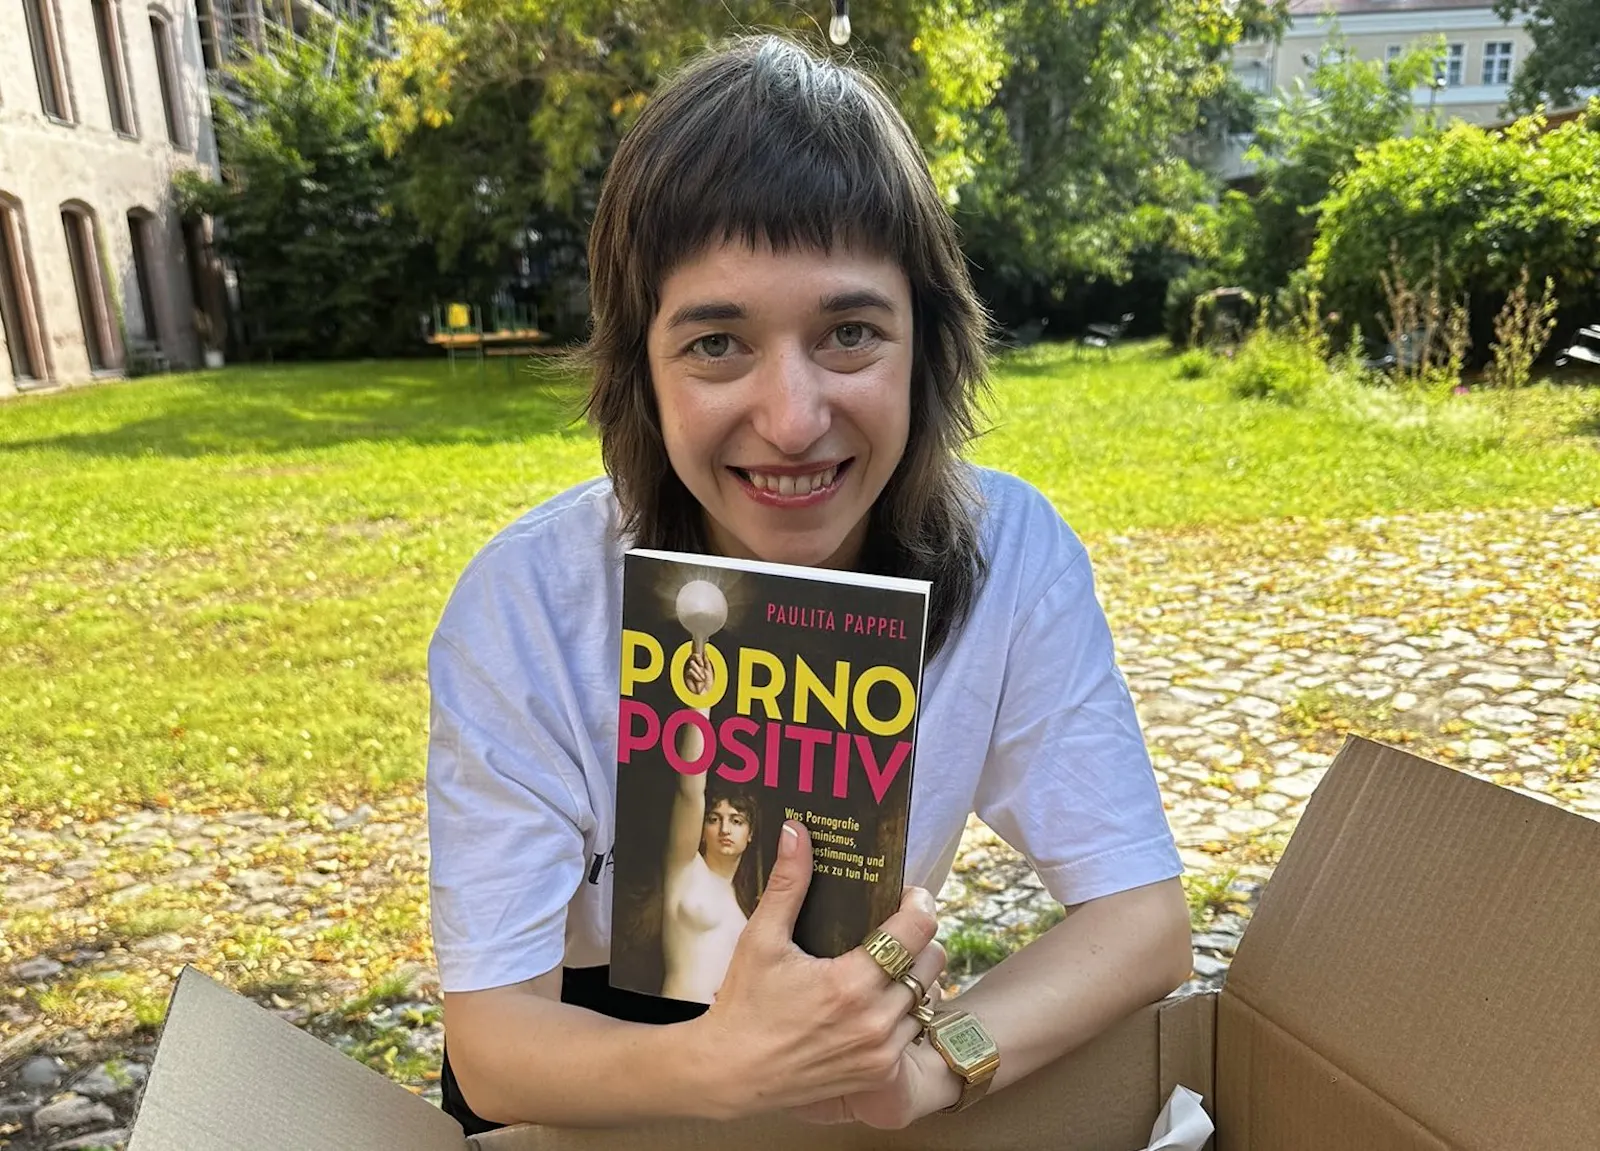 Paulita Pappel mit ihrem Buch "Pornopositiv", das am 31.8. im Ullstein Verlag erscheint.